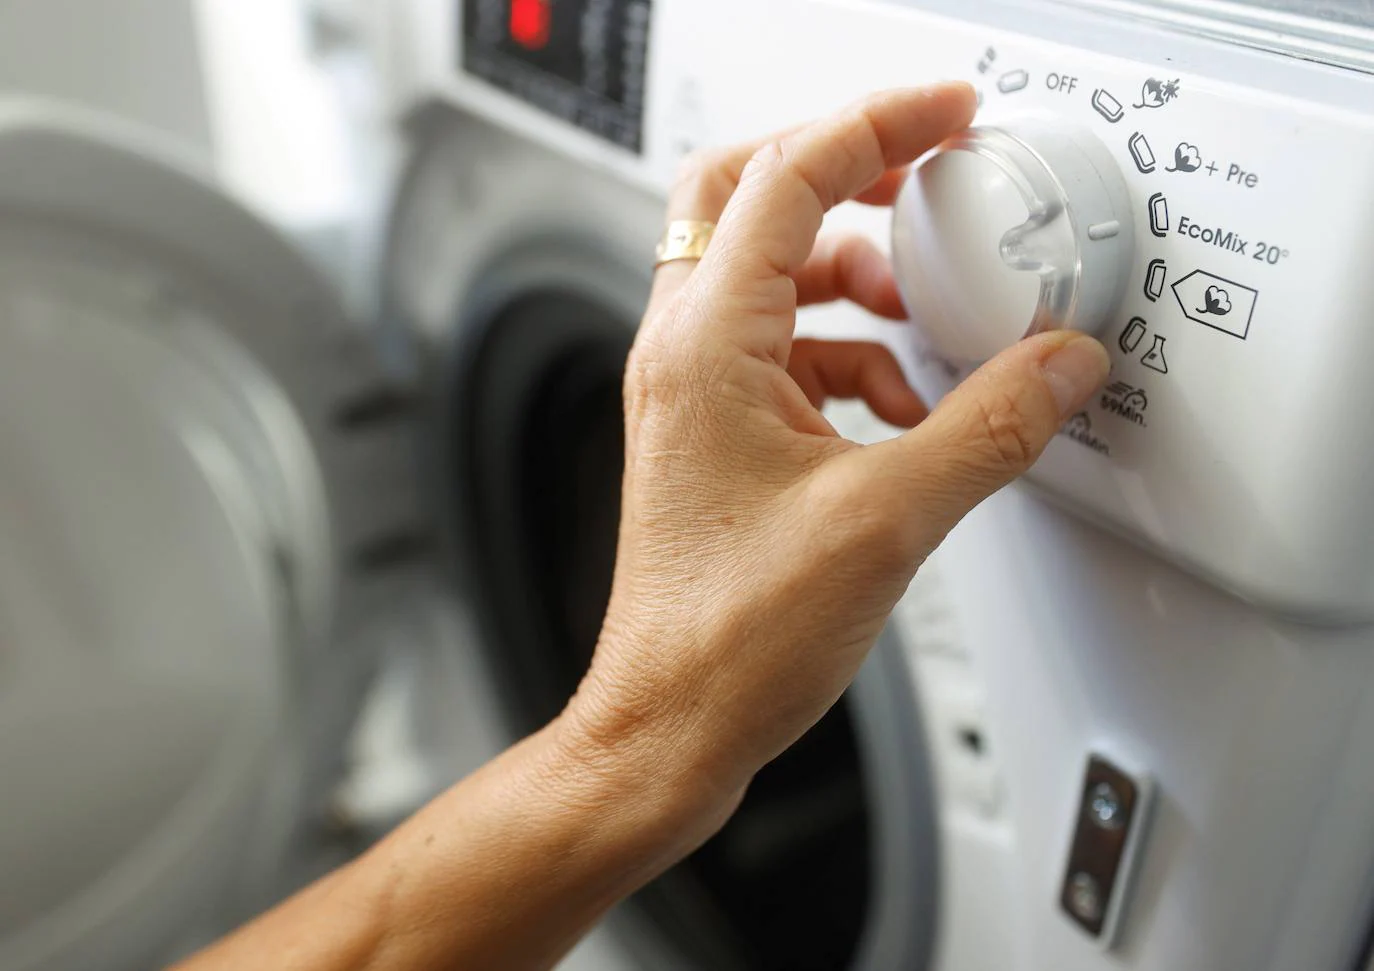 Cuál es el momento más barato para lavar la ropa?